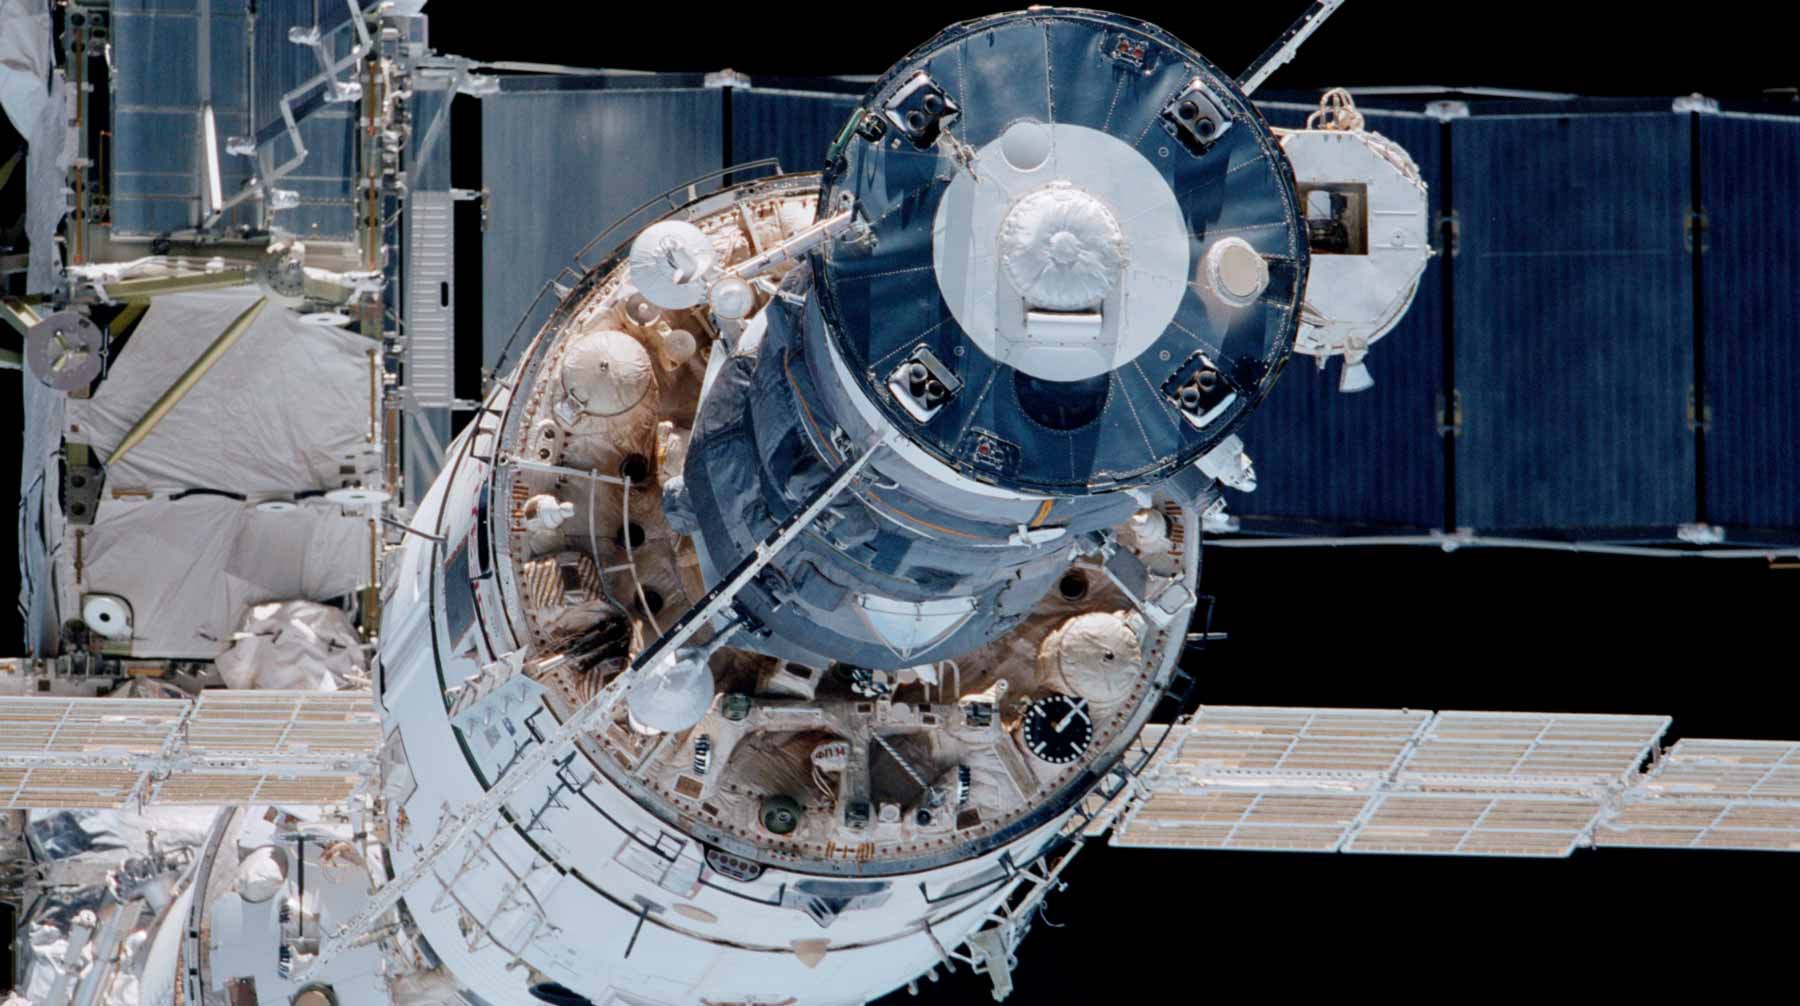 Dailystorm - Российские космонавты заявили, что скотч не помог устранить утечку воздуха на МКС